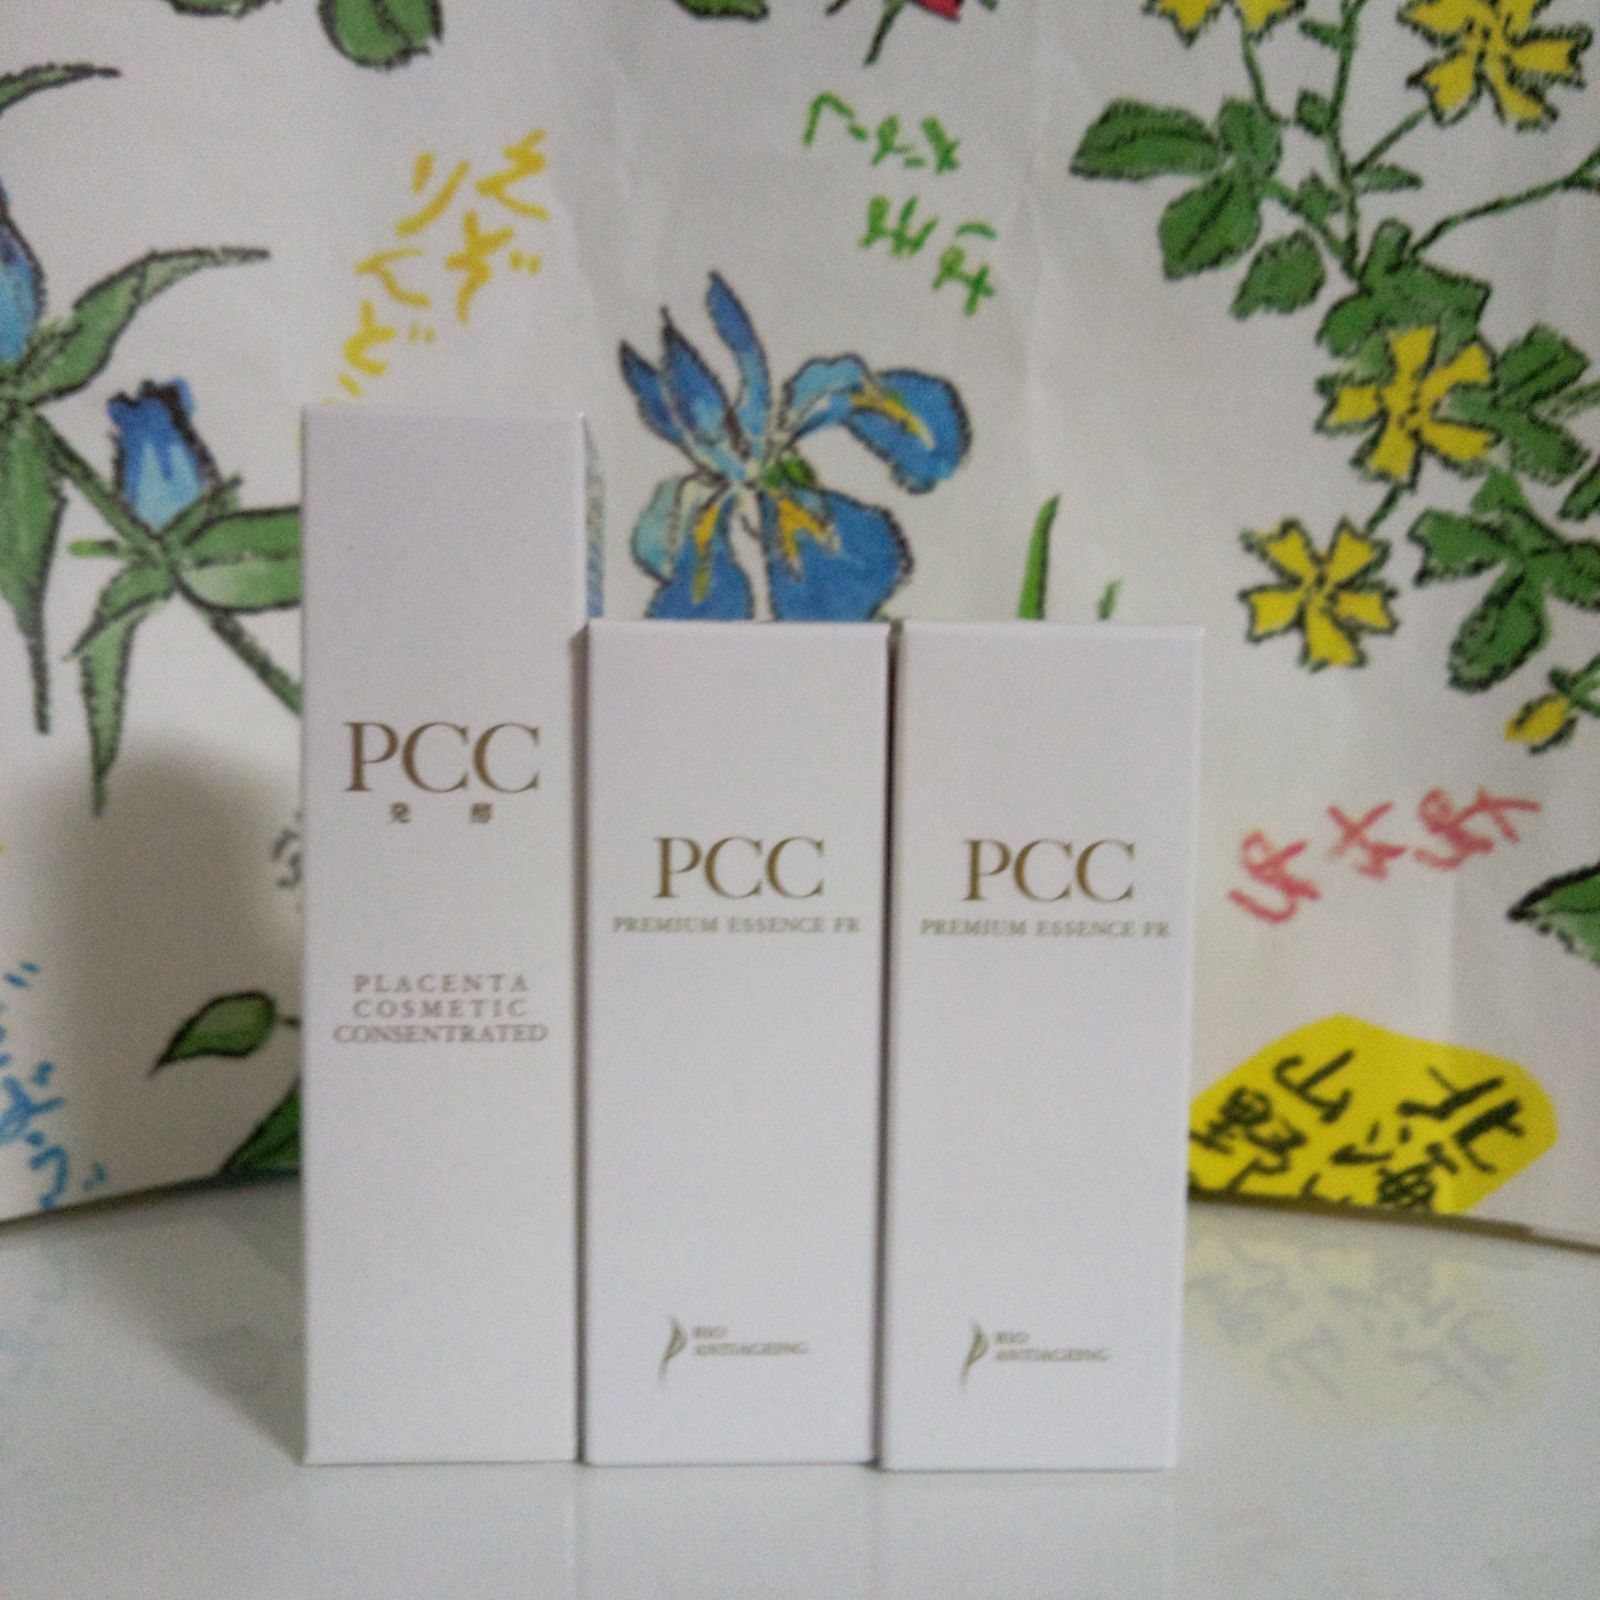 PCCプレミアムエッセンスFR、 発酵プレミアムソープ - 美容液